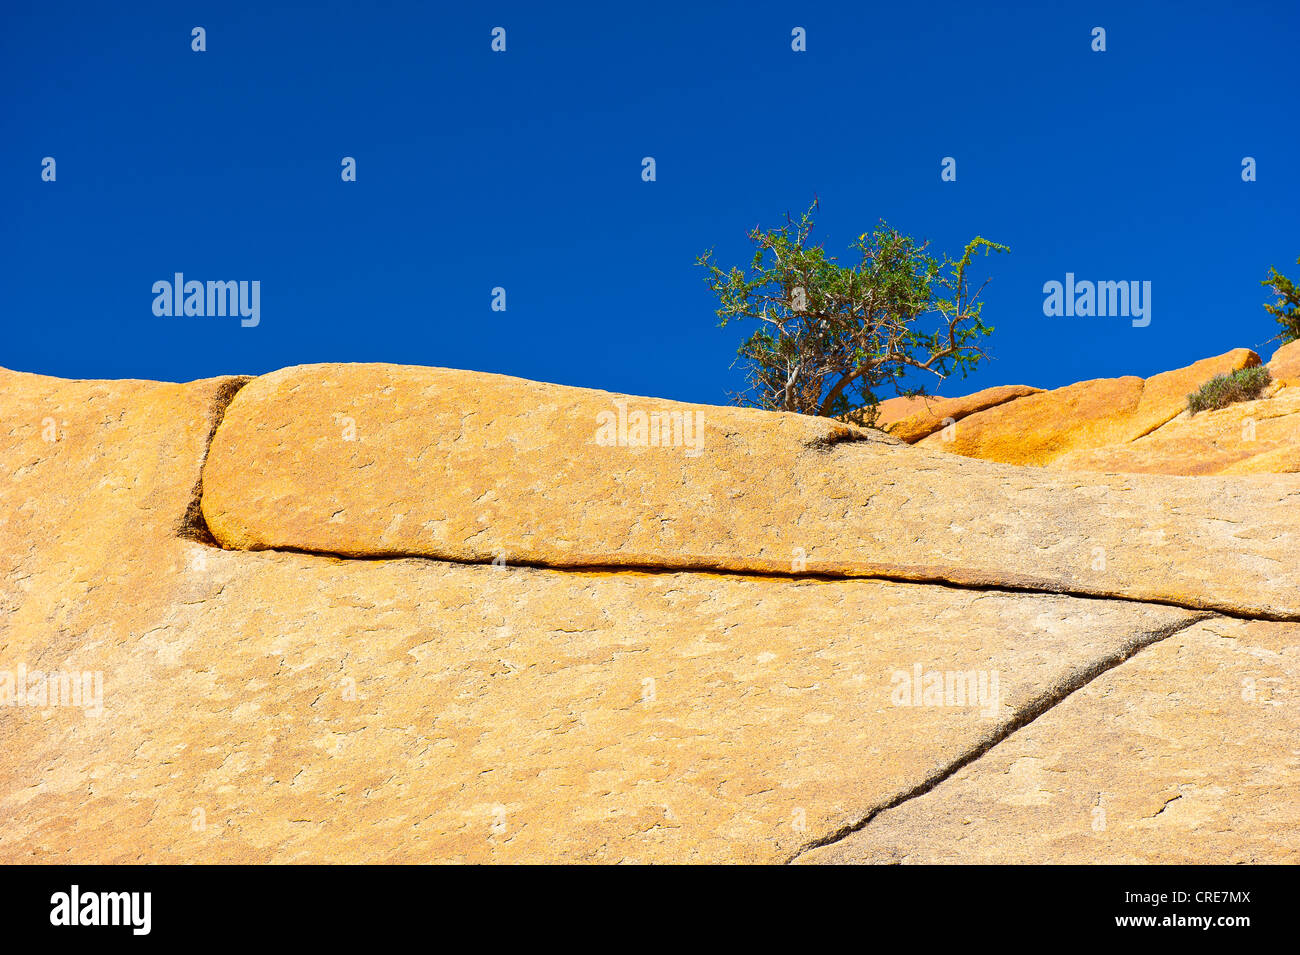 Risse in einem Granit-Felsvorsprung, wächst eine junge Arganbaum (Argania Spinosa) zwischen den Rissen, Anti-Atlas-Gebirge Stockfoto